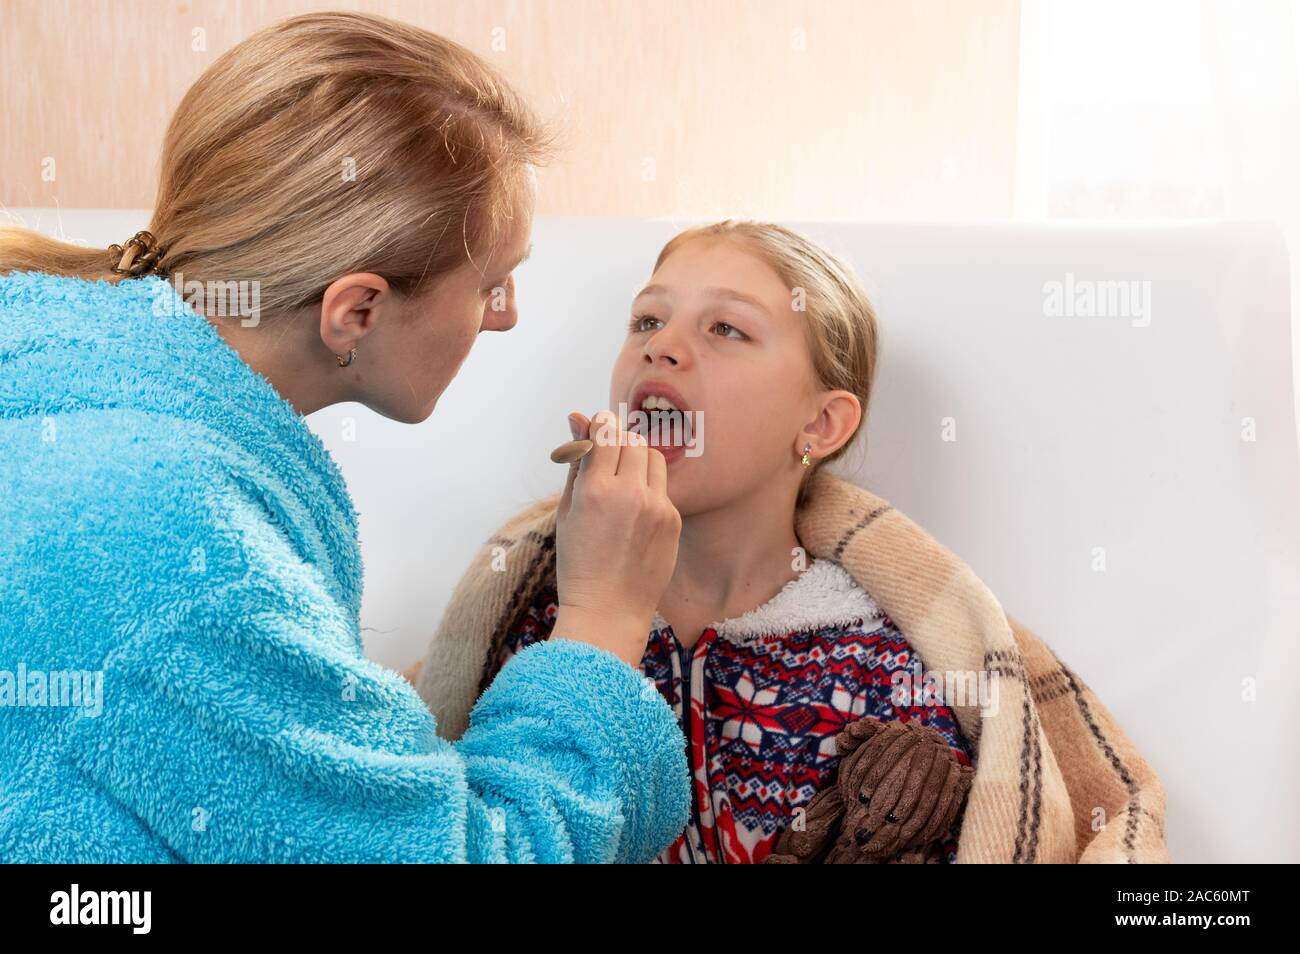 Ein Arzt prüft die Kehle eines Patienten. Hals behandeln. Das Mädchen öffnete ihren Mund zu prüfen. Stockfoto